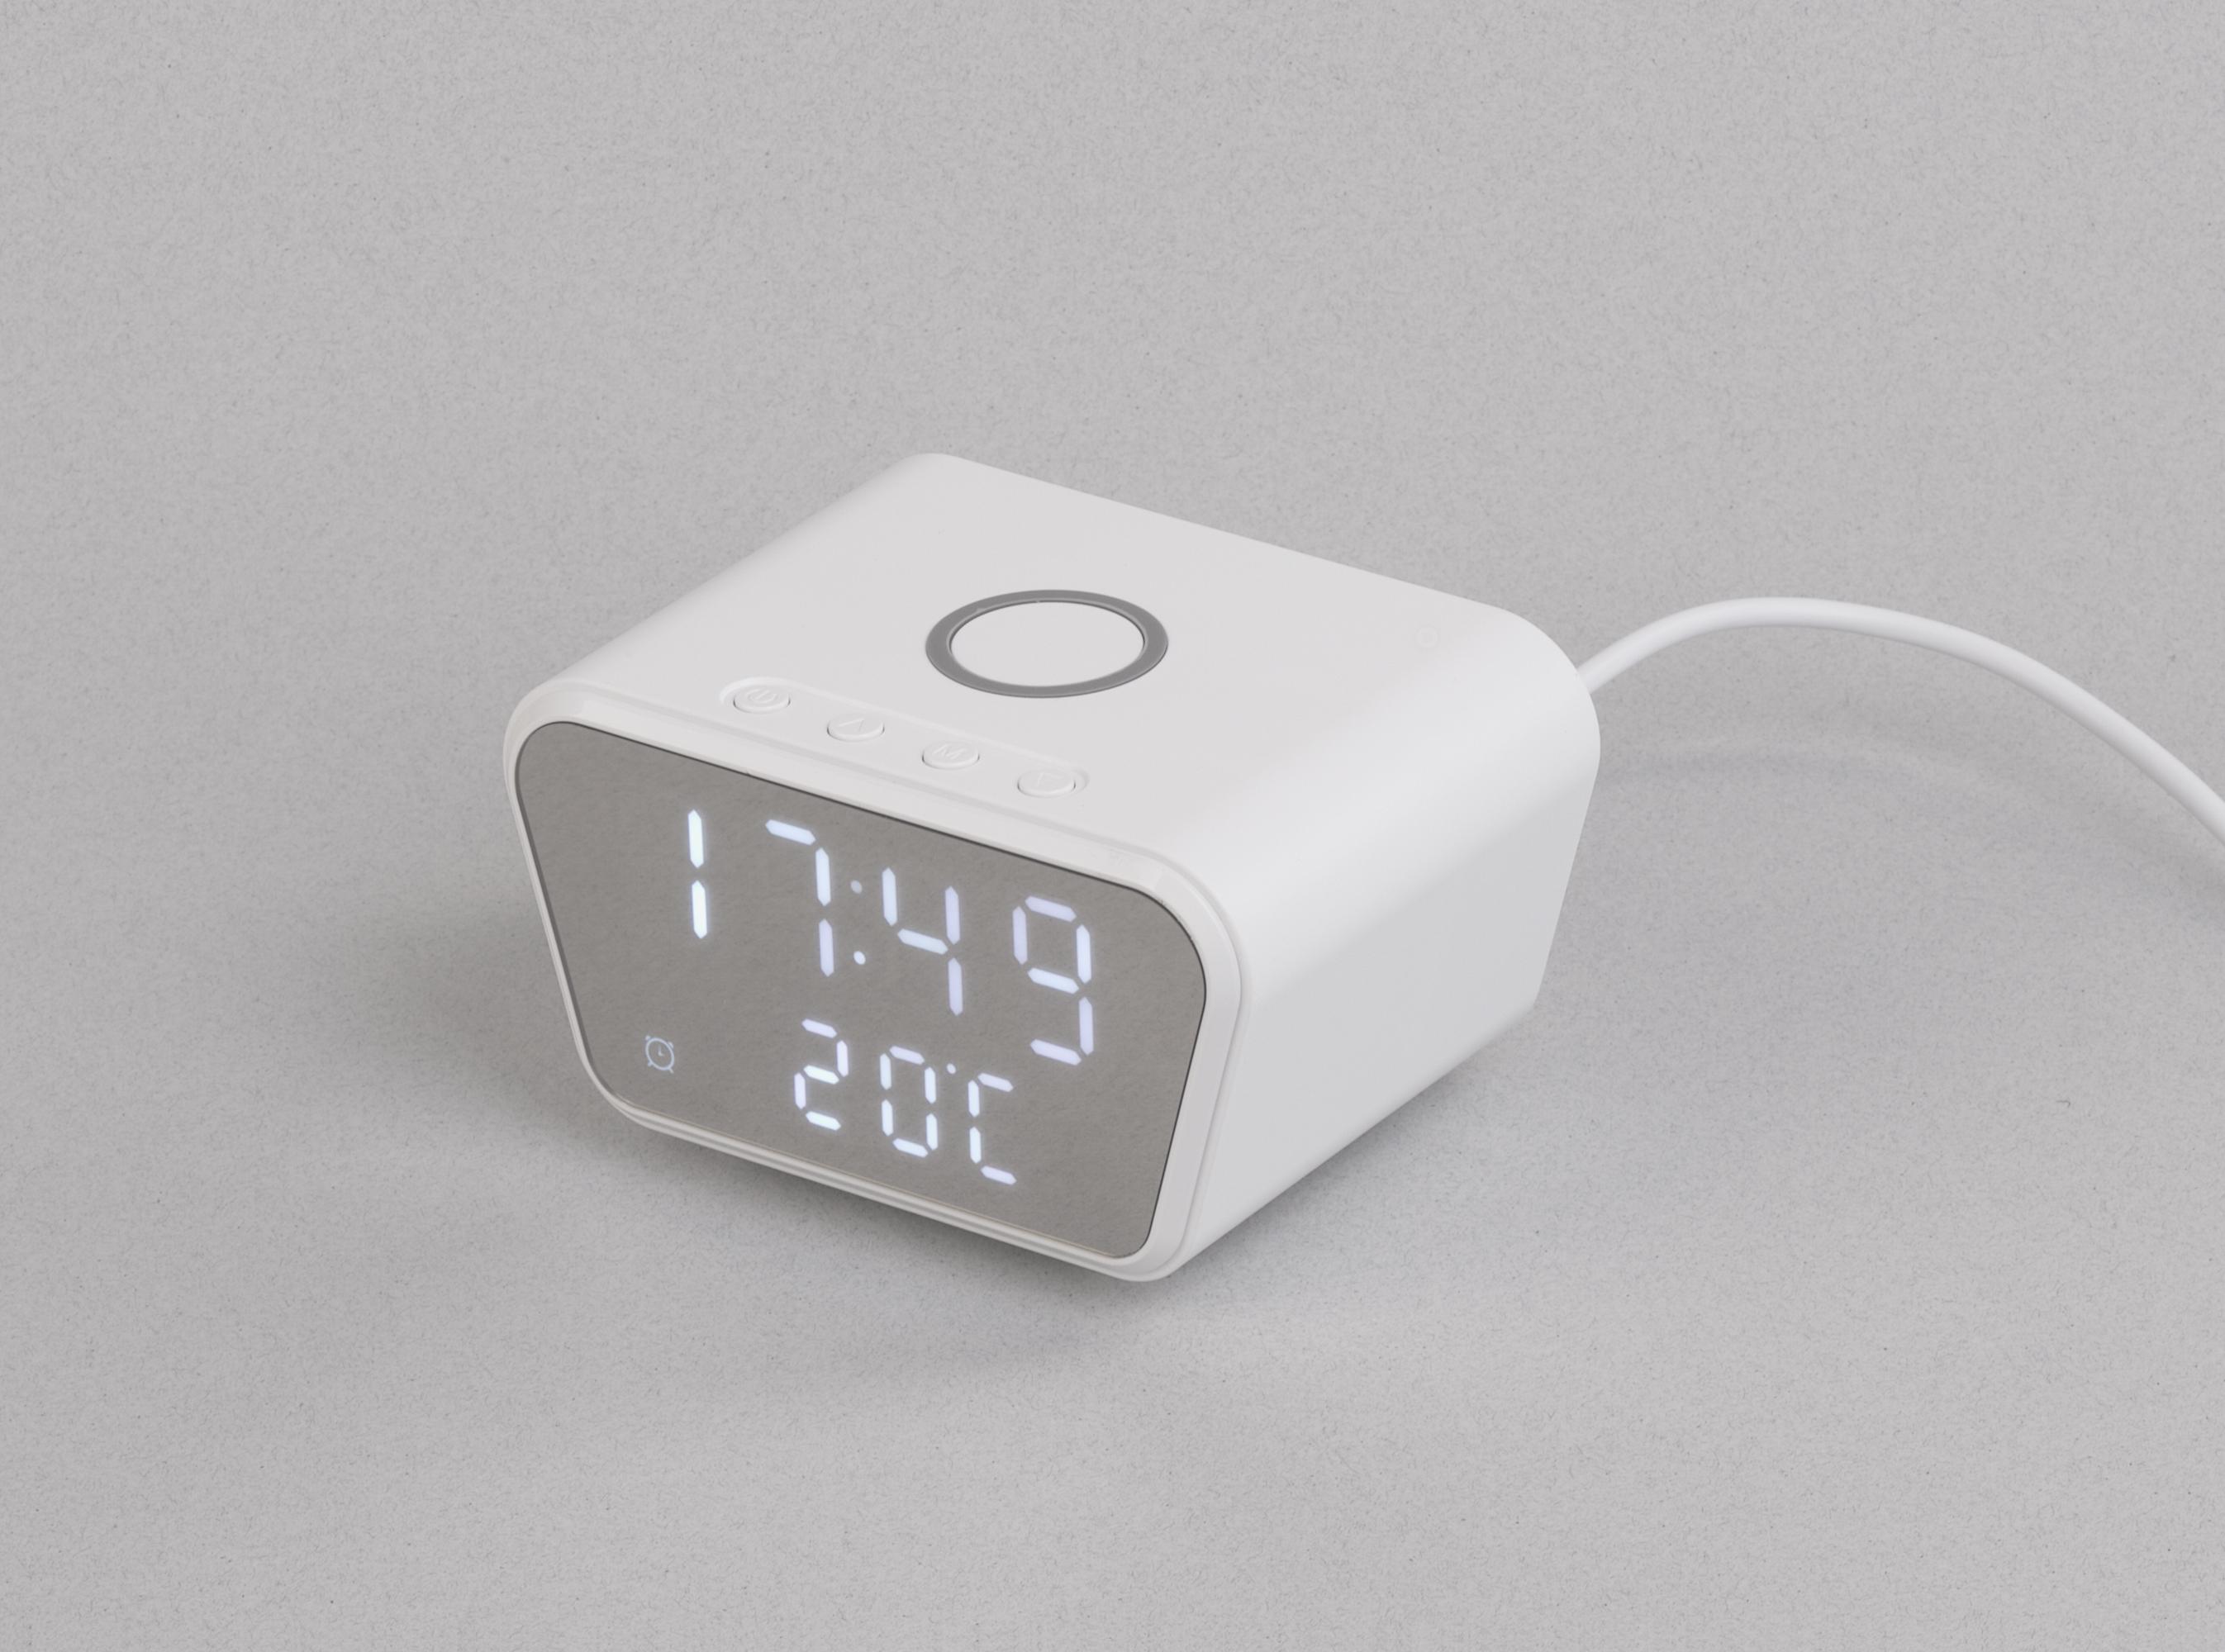 Настольные часы "Smart Clock" с беспроводным (15W) зарядным устройством, будильником и термометром, белый, арт. 9607-1 - вид 1 из 7